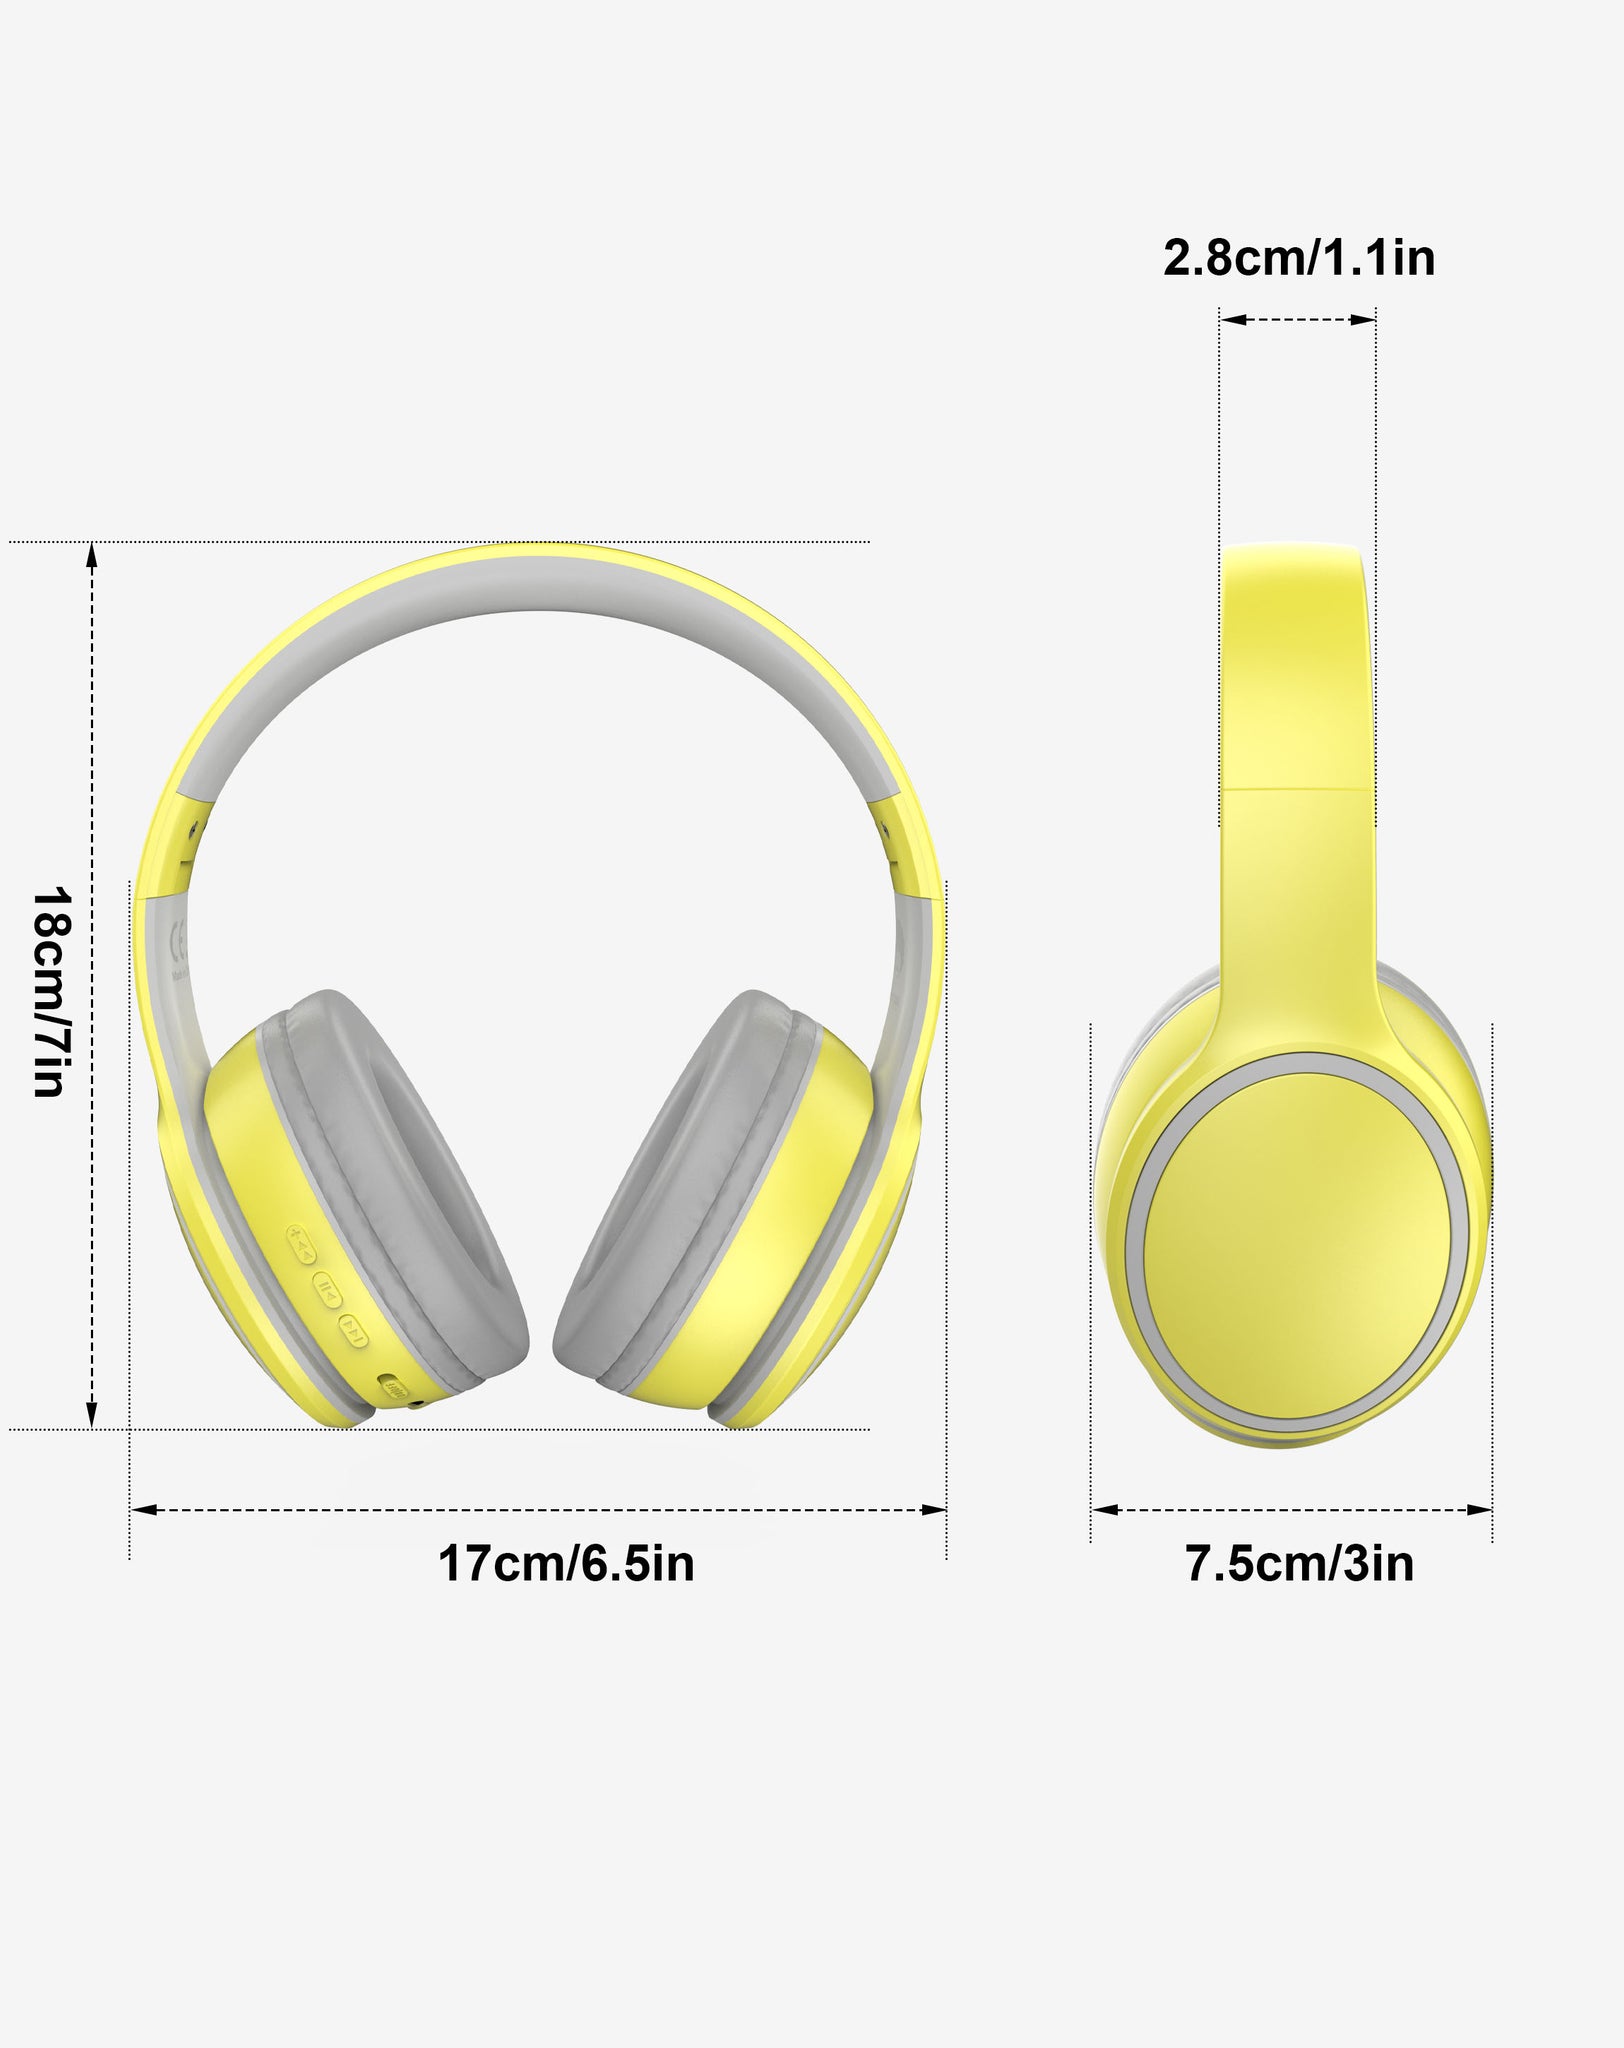 Rockpapa E9 Foldable Bluetooth Headphones Wireless with Bag